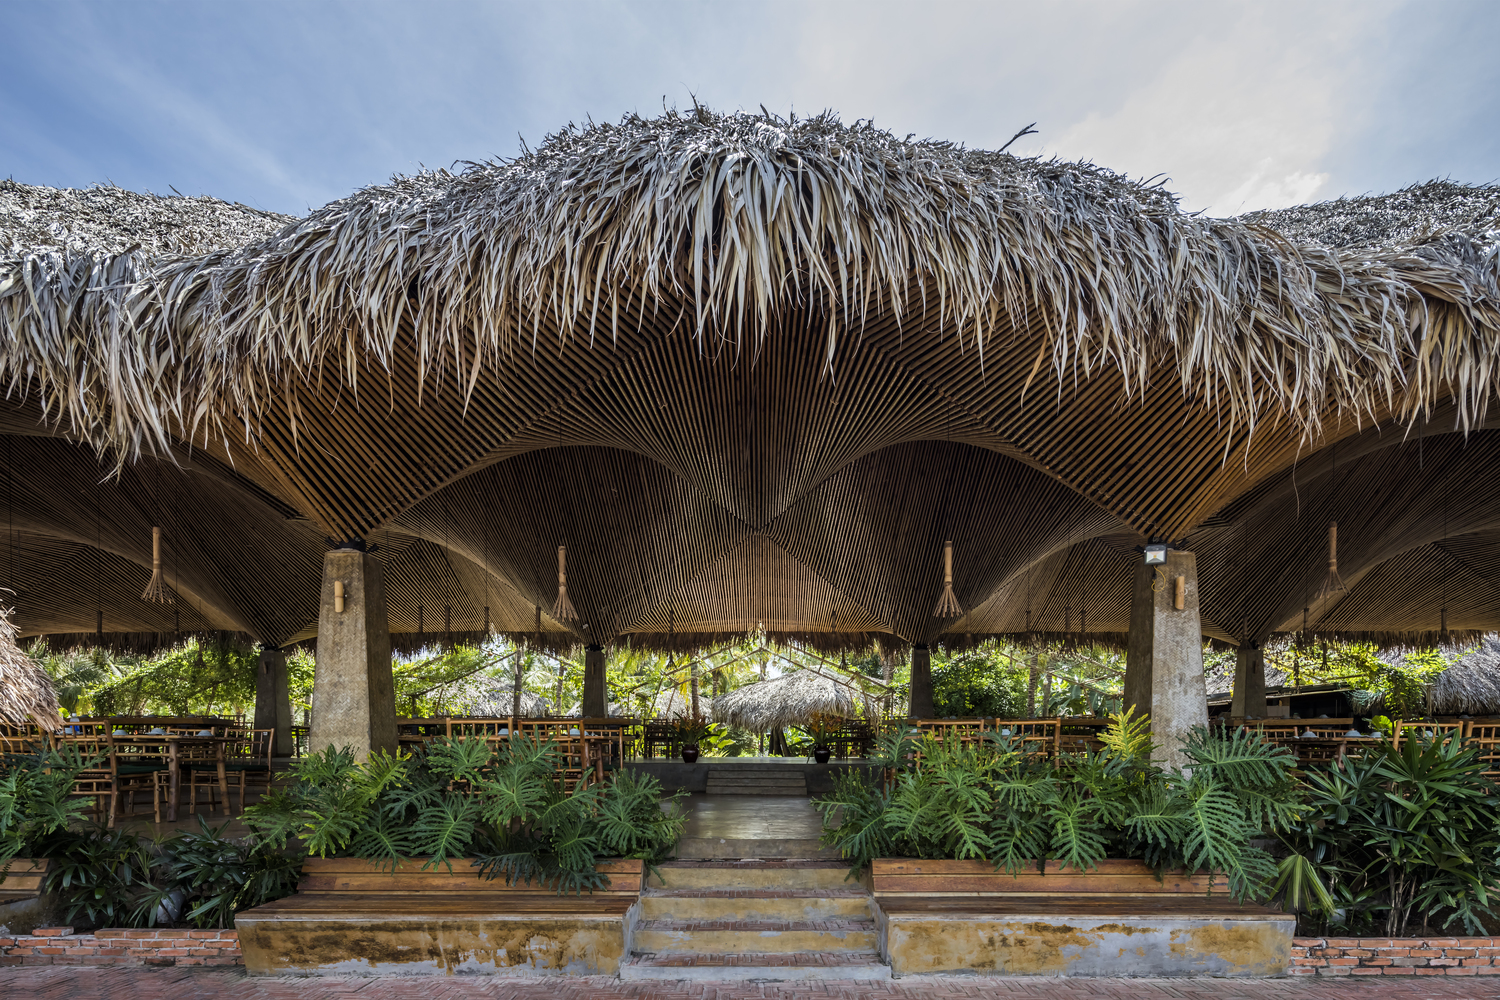 Nhà hàng mái dừa, thân tre ven sông ở miền Tây nổi bật trên báo ngoại - Ảnh 1.